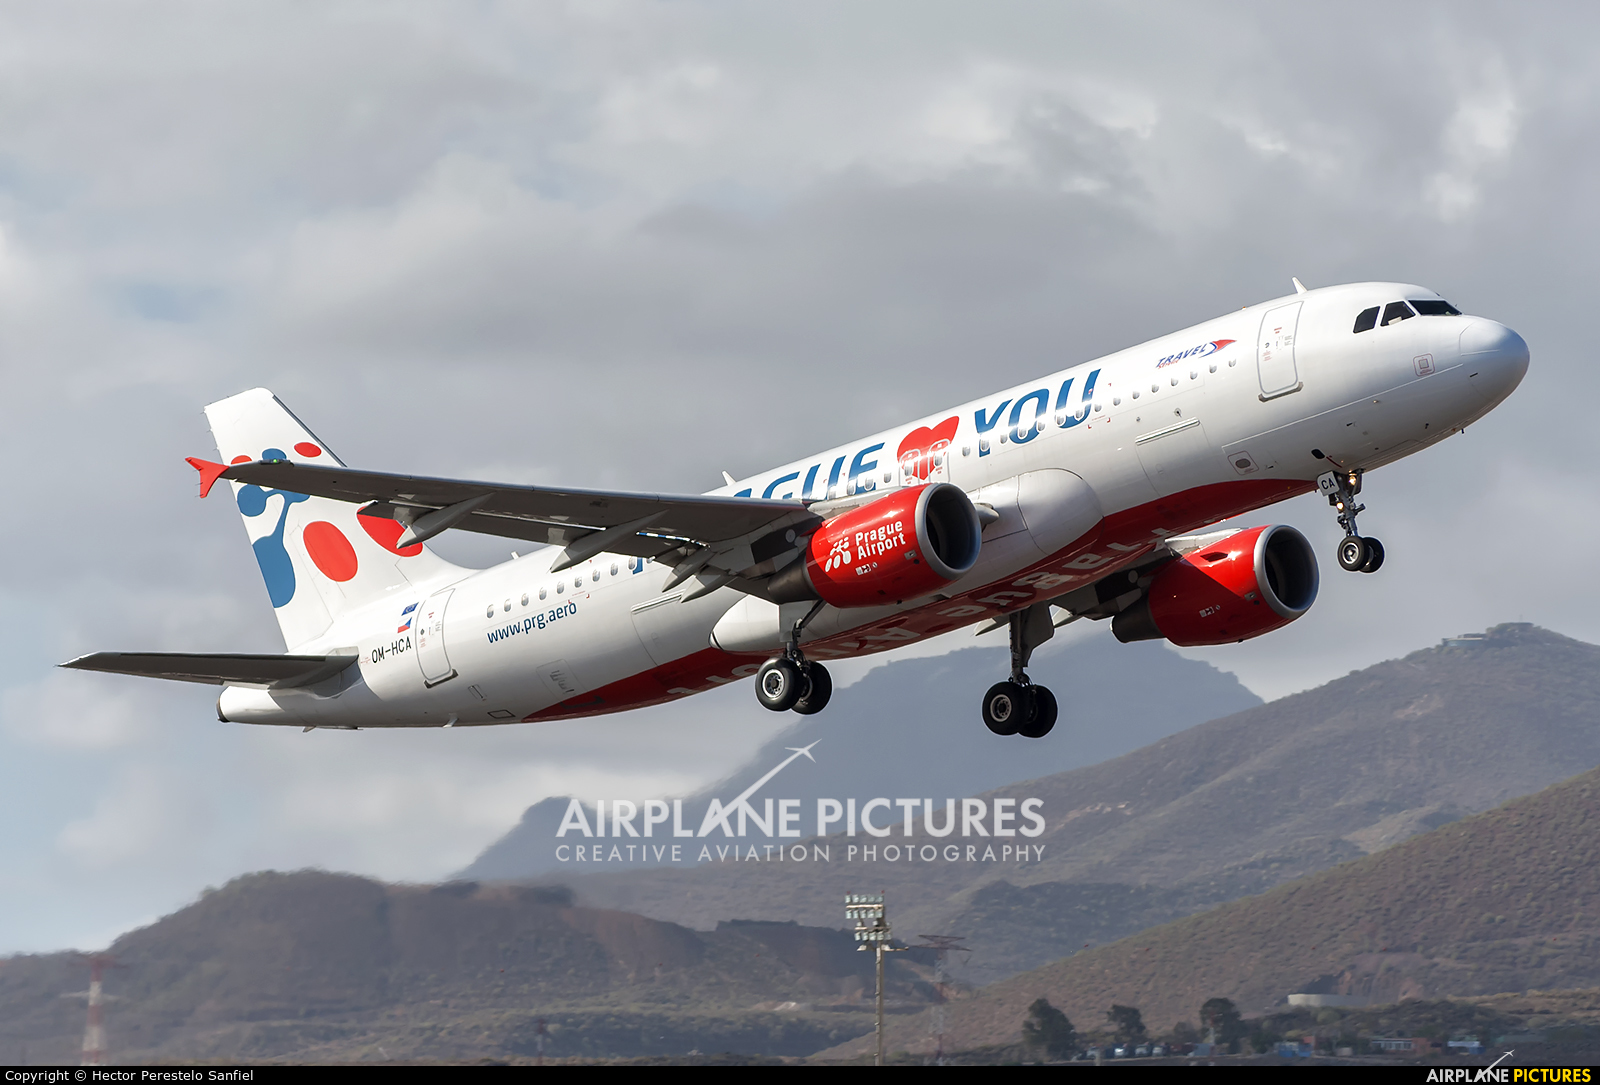 Travel Service OM-HCA aircraft at Tenerife Sur - Reina Sofia